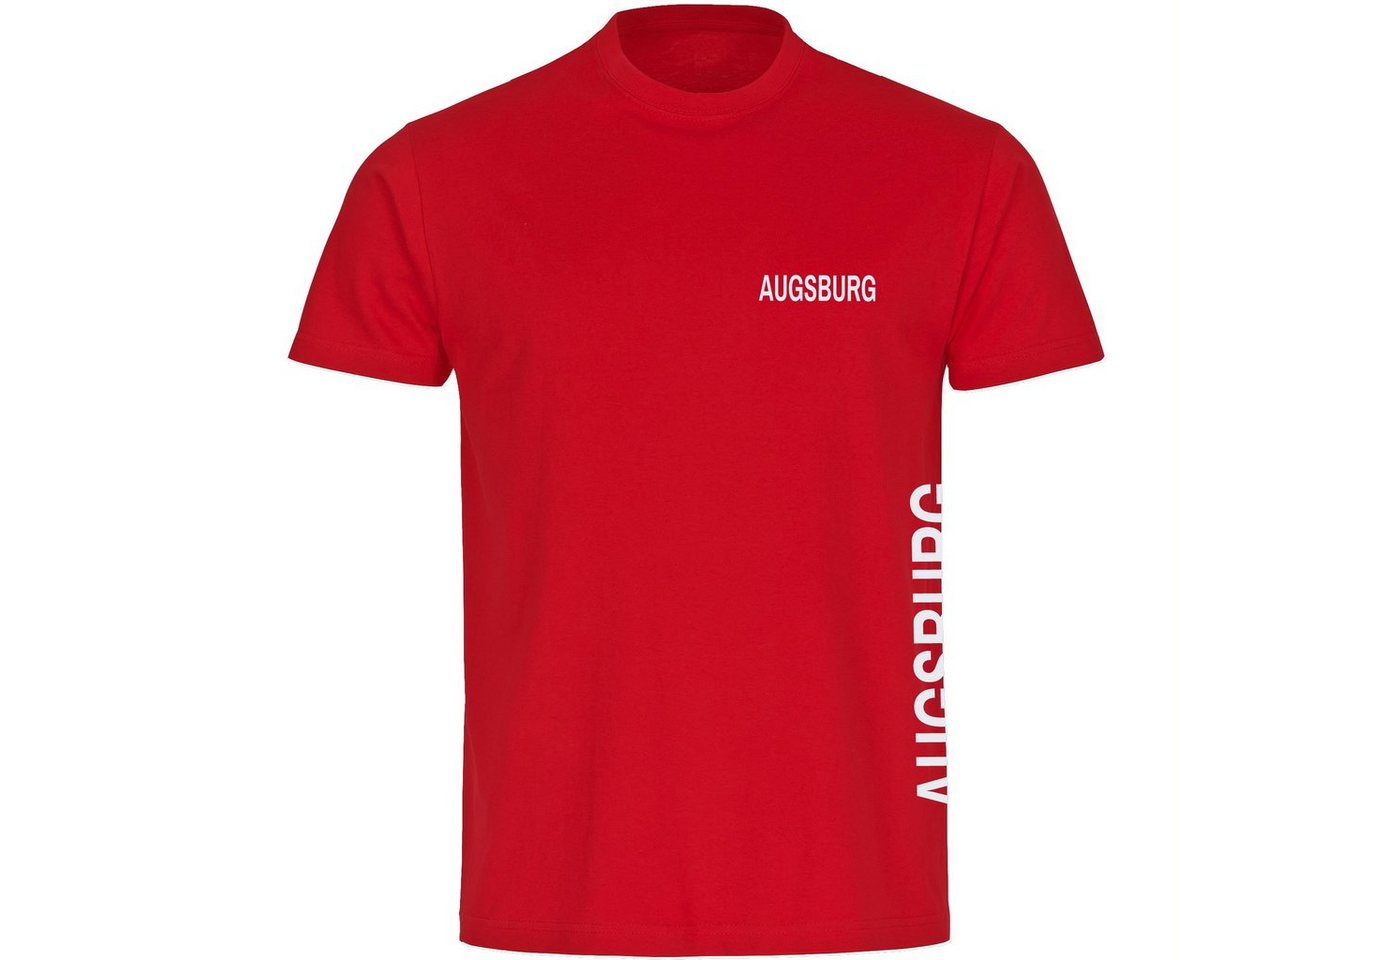 multifanshop T-Shirt Herren Augsburg - Brust & Seite - Männer von multifanshop